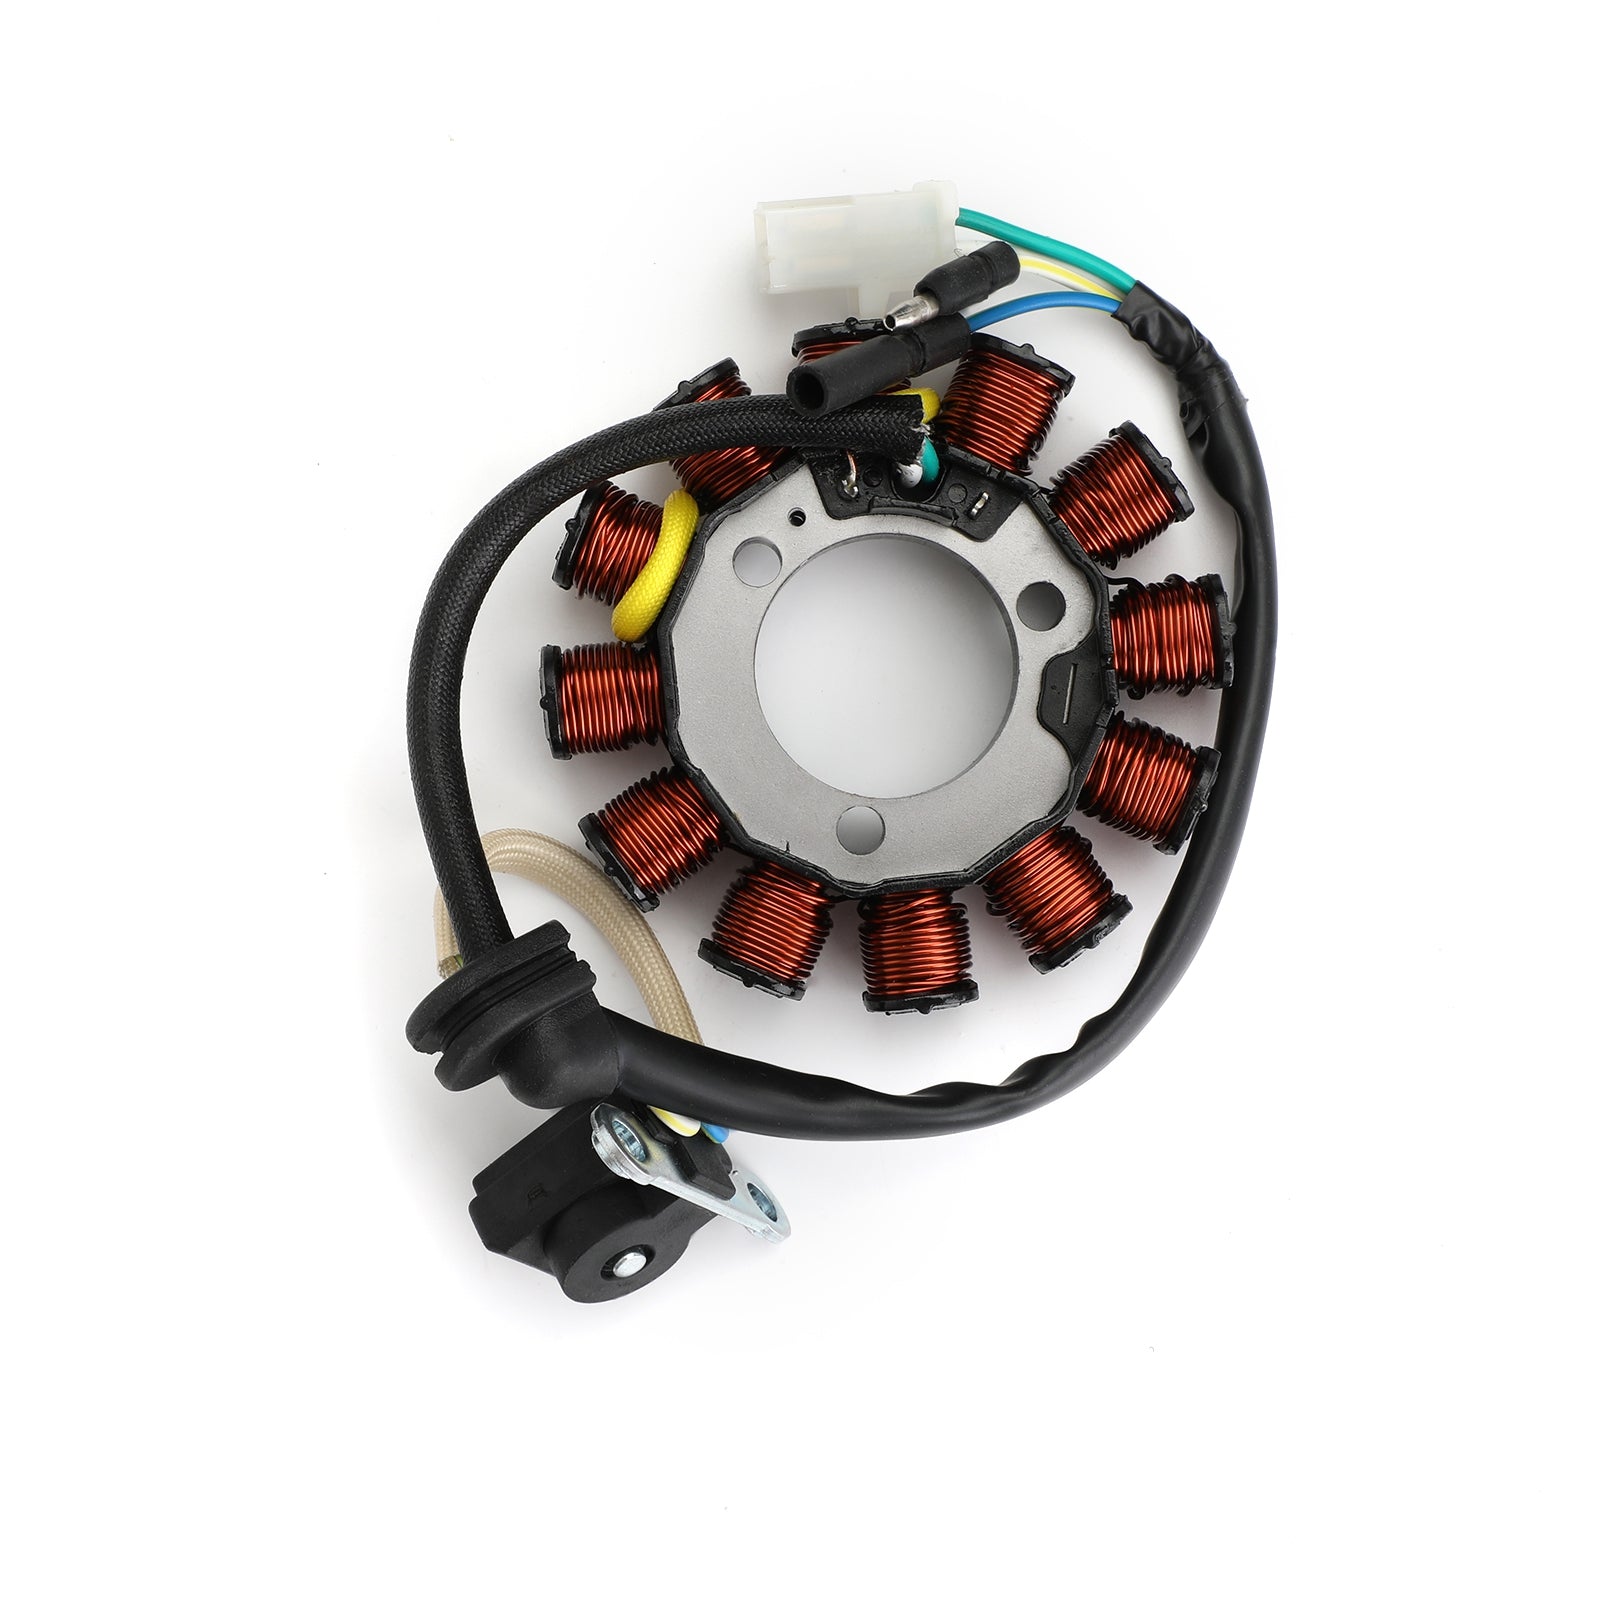 Stator Magneto Generator For Honda CBF125 CBF 125 2008-2015 Repl 31120-KWF-941